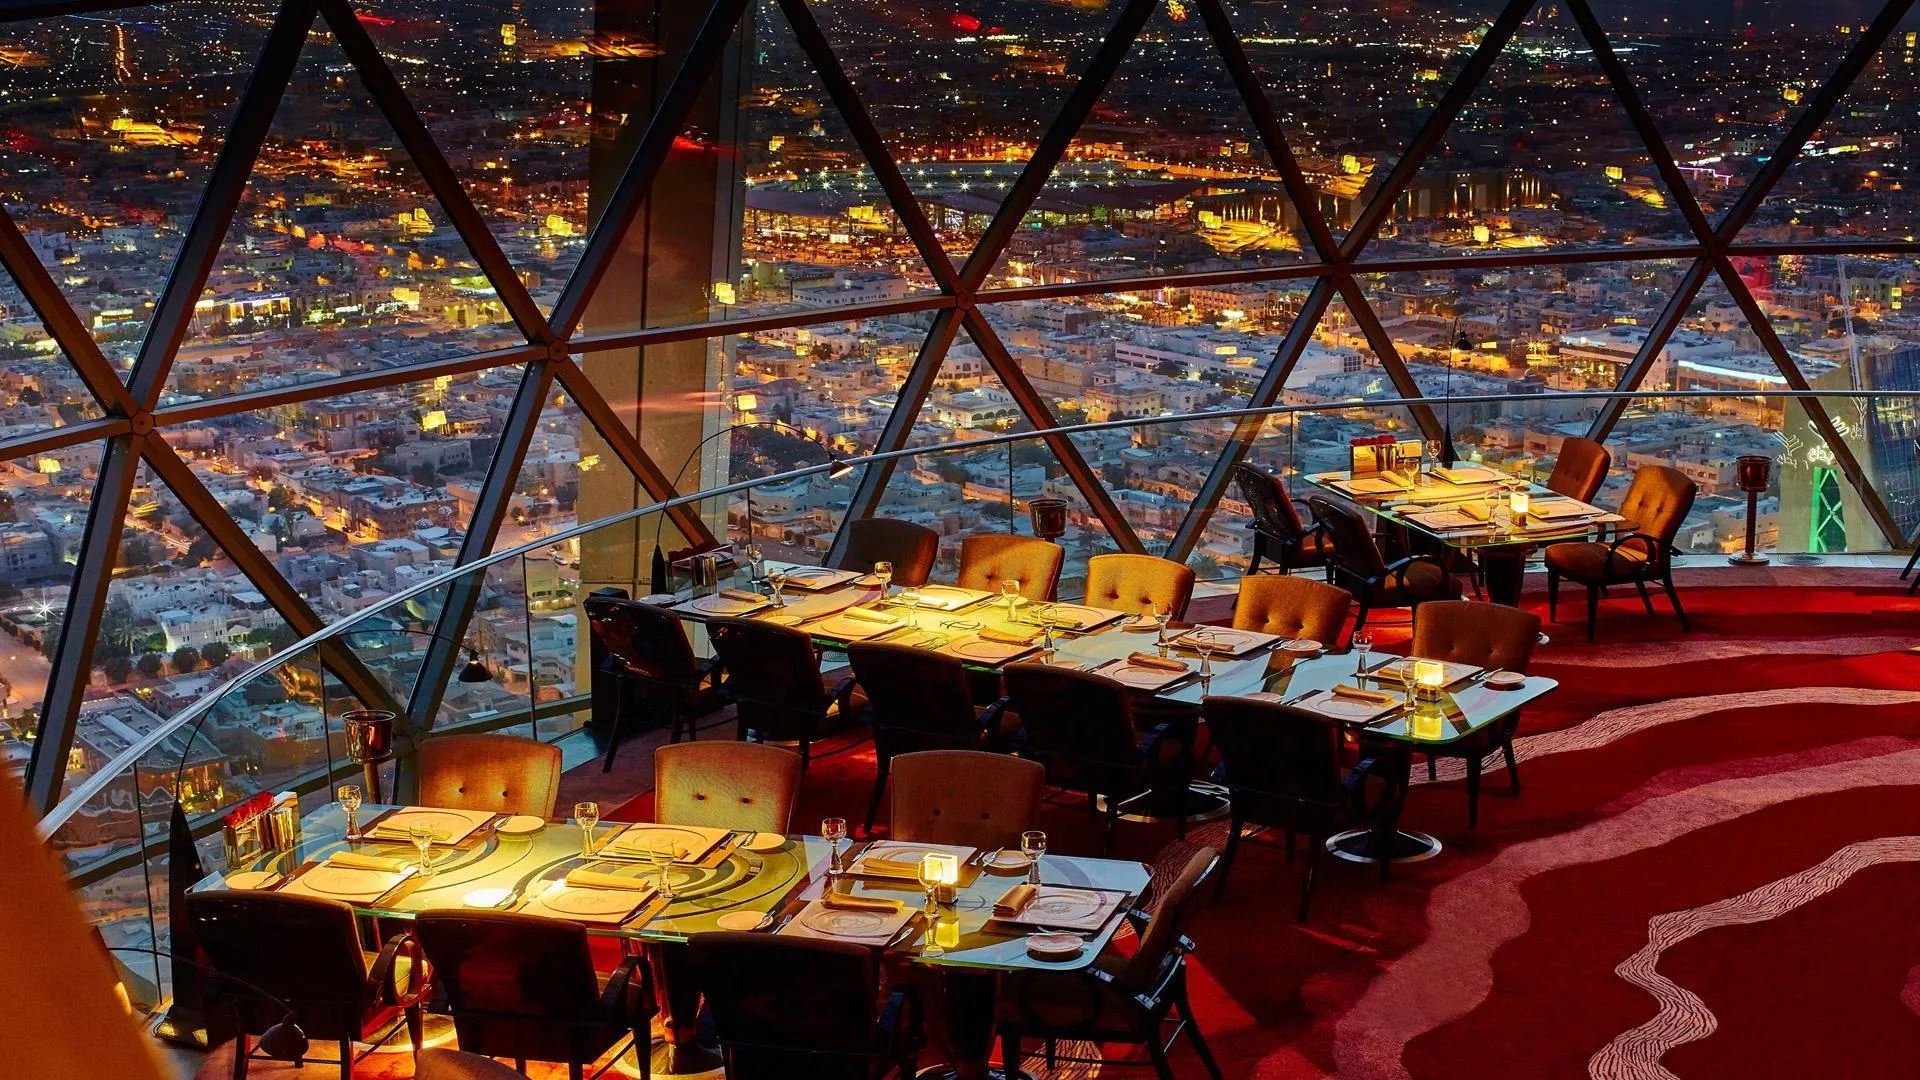 السياحة في السعودية: خوضي تجربة التسوّق وزيارة المطاعم في أعلى الأبنية في العالم، برج الفيصلية